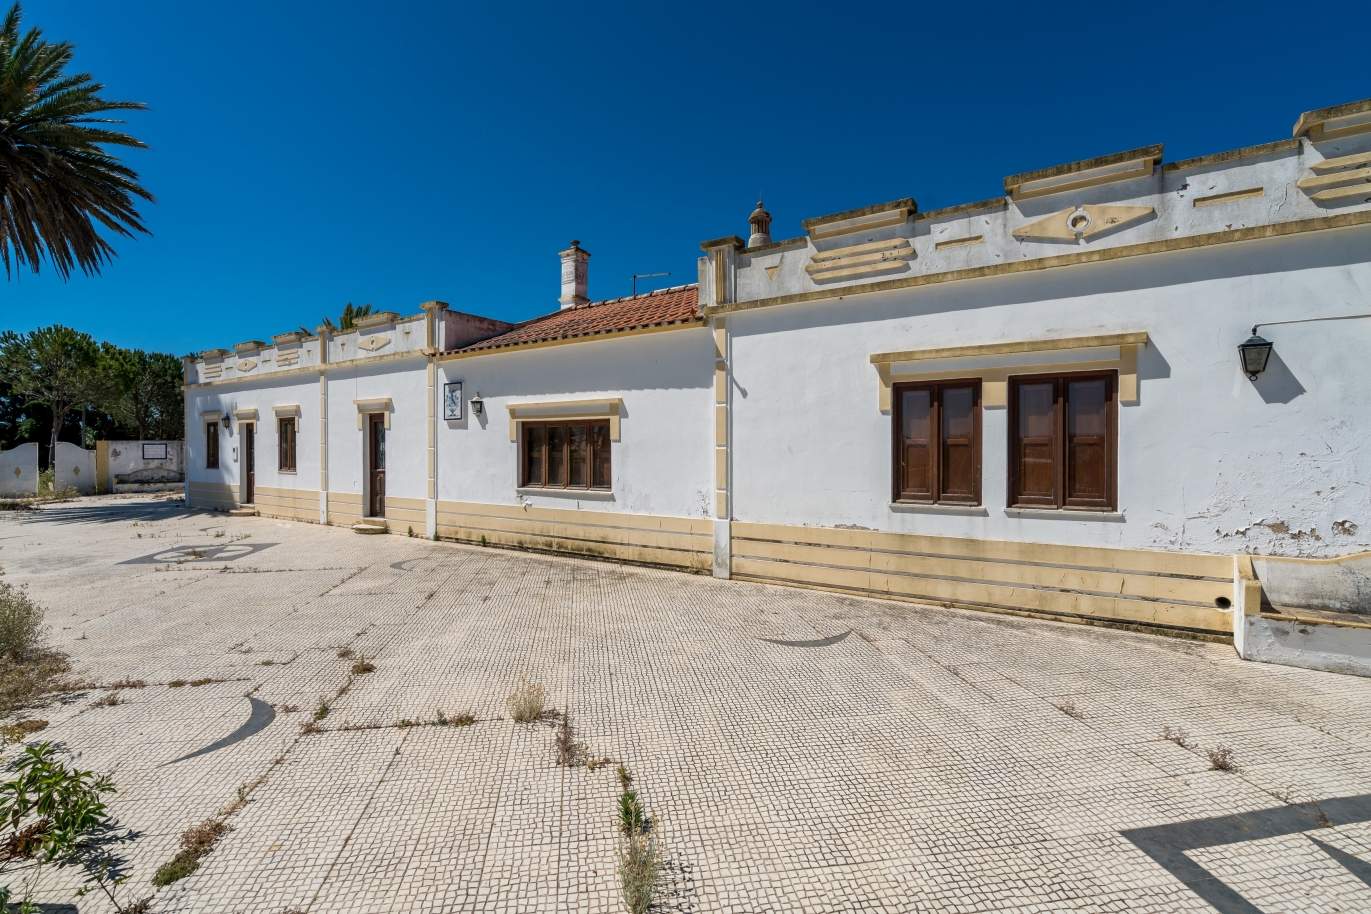 Venda de propriedade em Alcantarilha, Silves, Algarve_105705